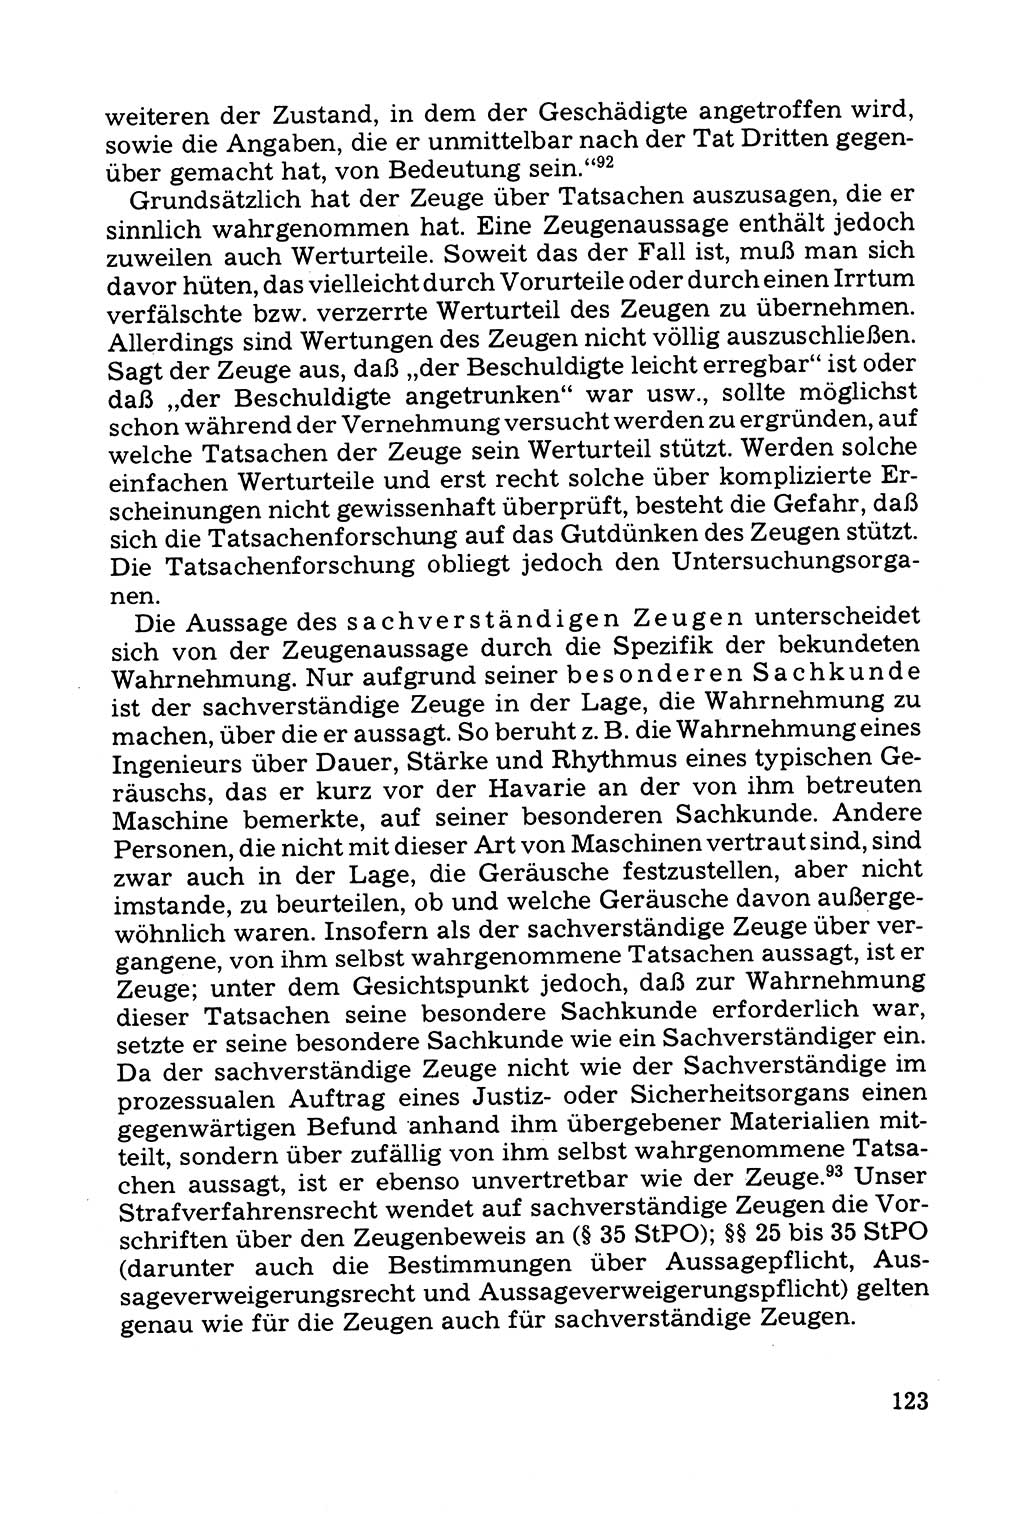 Grundfragen der Beweisführung im Ermittlungsverfahren [Deutsche Demokratische Republik (DDR)] 1980, Seite 123 (Bws.-Fhrg. EV DDR 1980, S. 123)